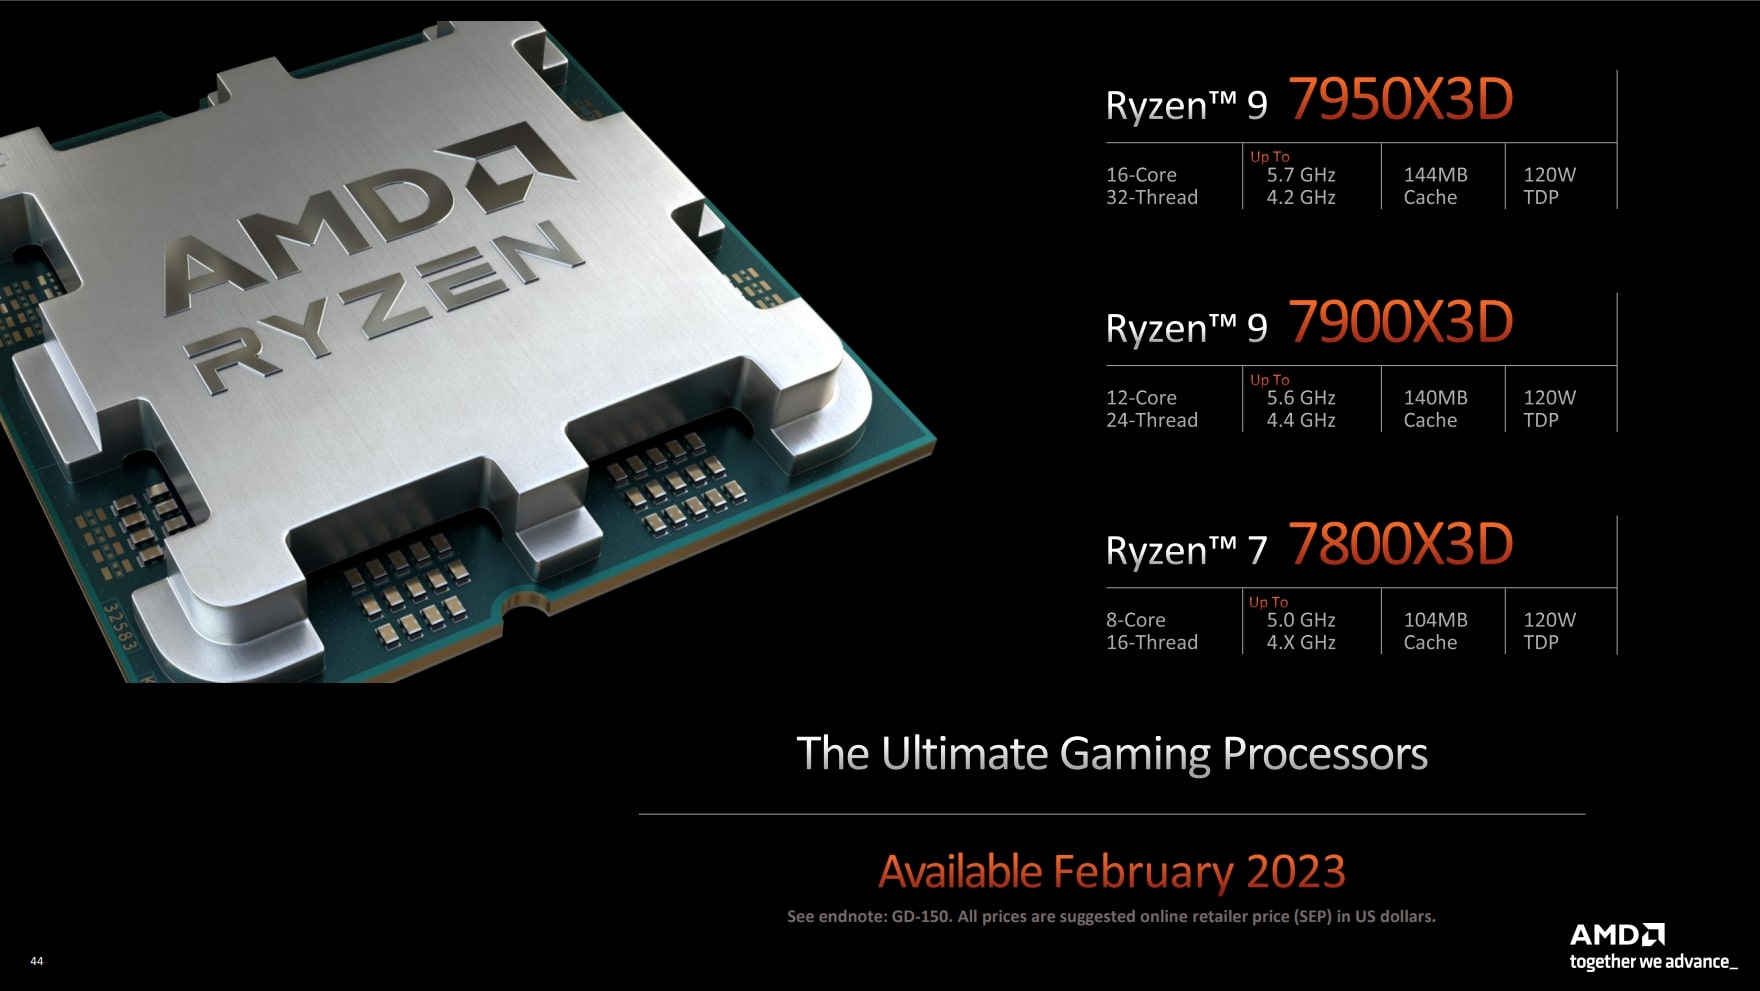 AMD Ryzen 3D Gaming Desktop Processors